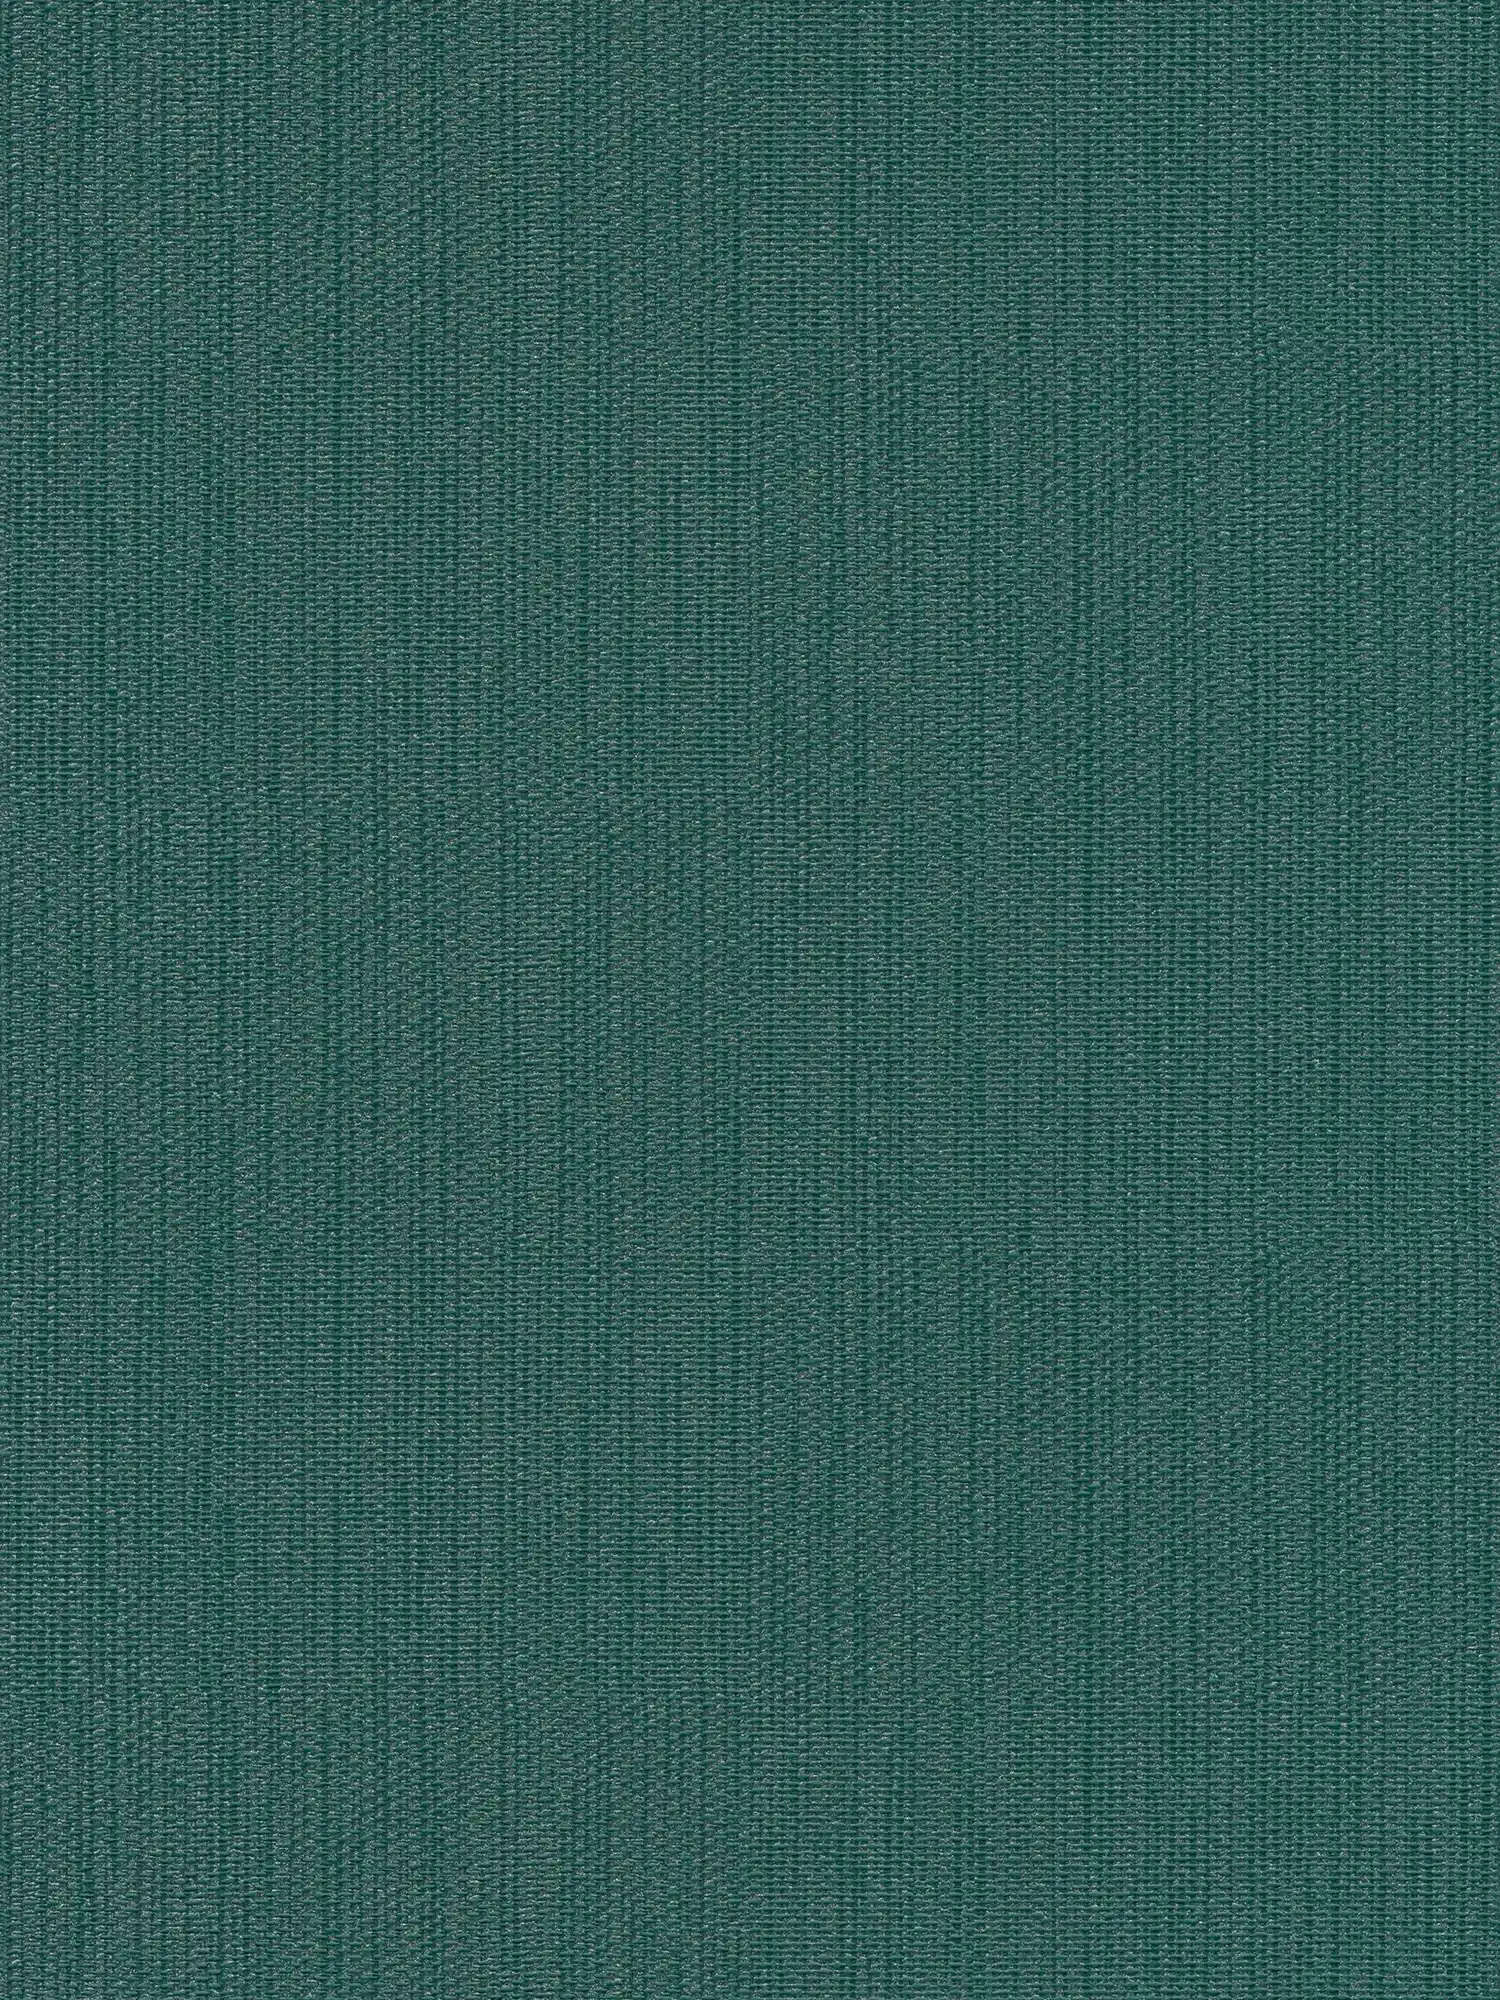 Single-coloured non-woven wallpaper in textile look - green, dark green
